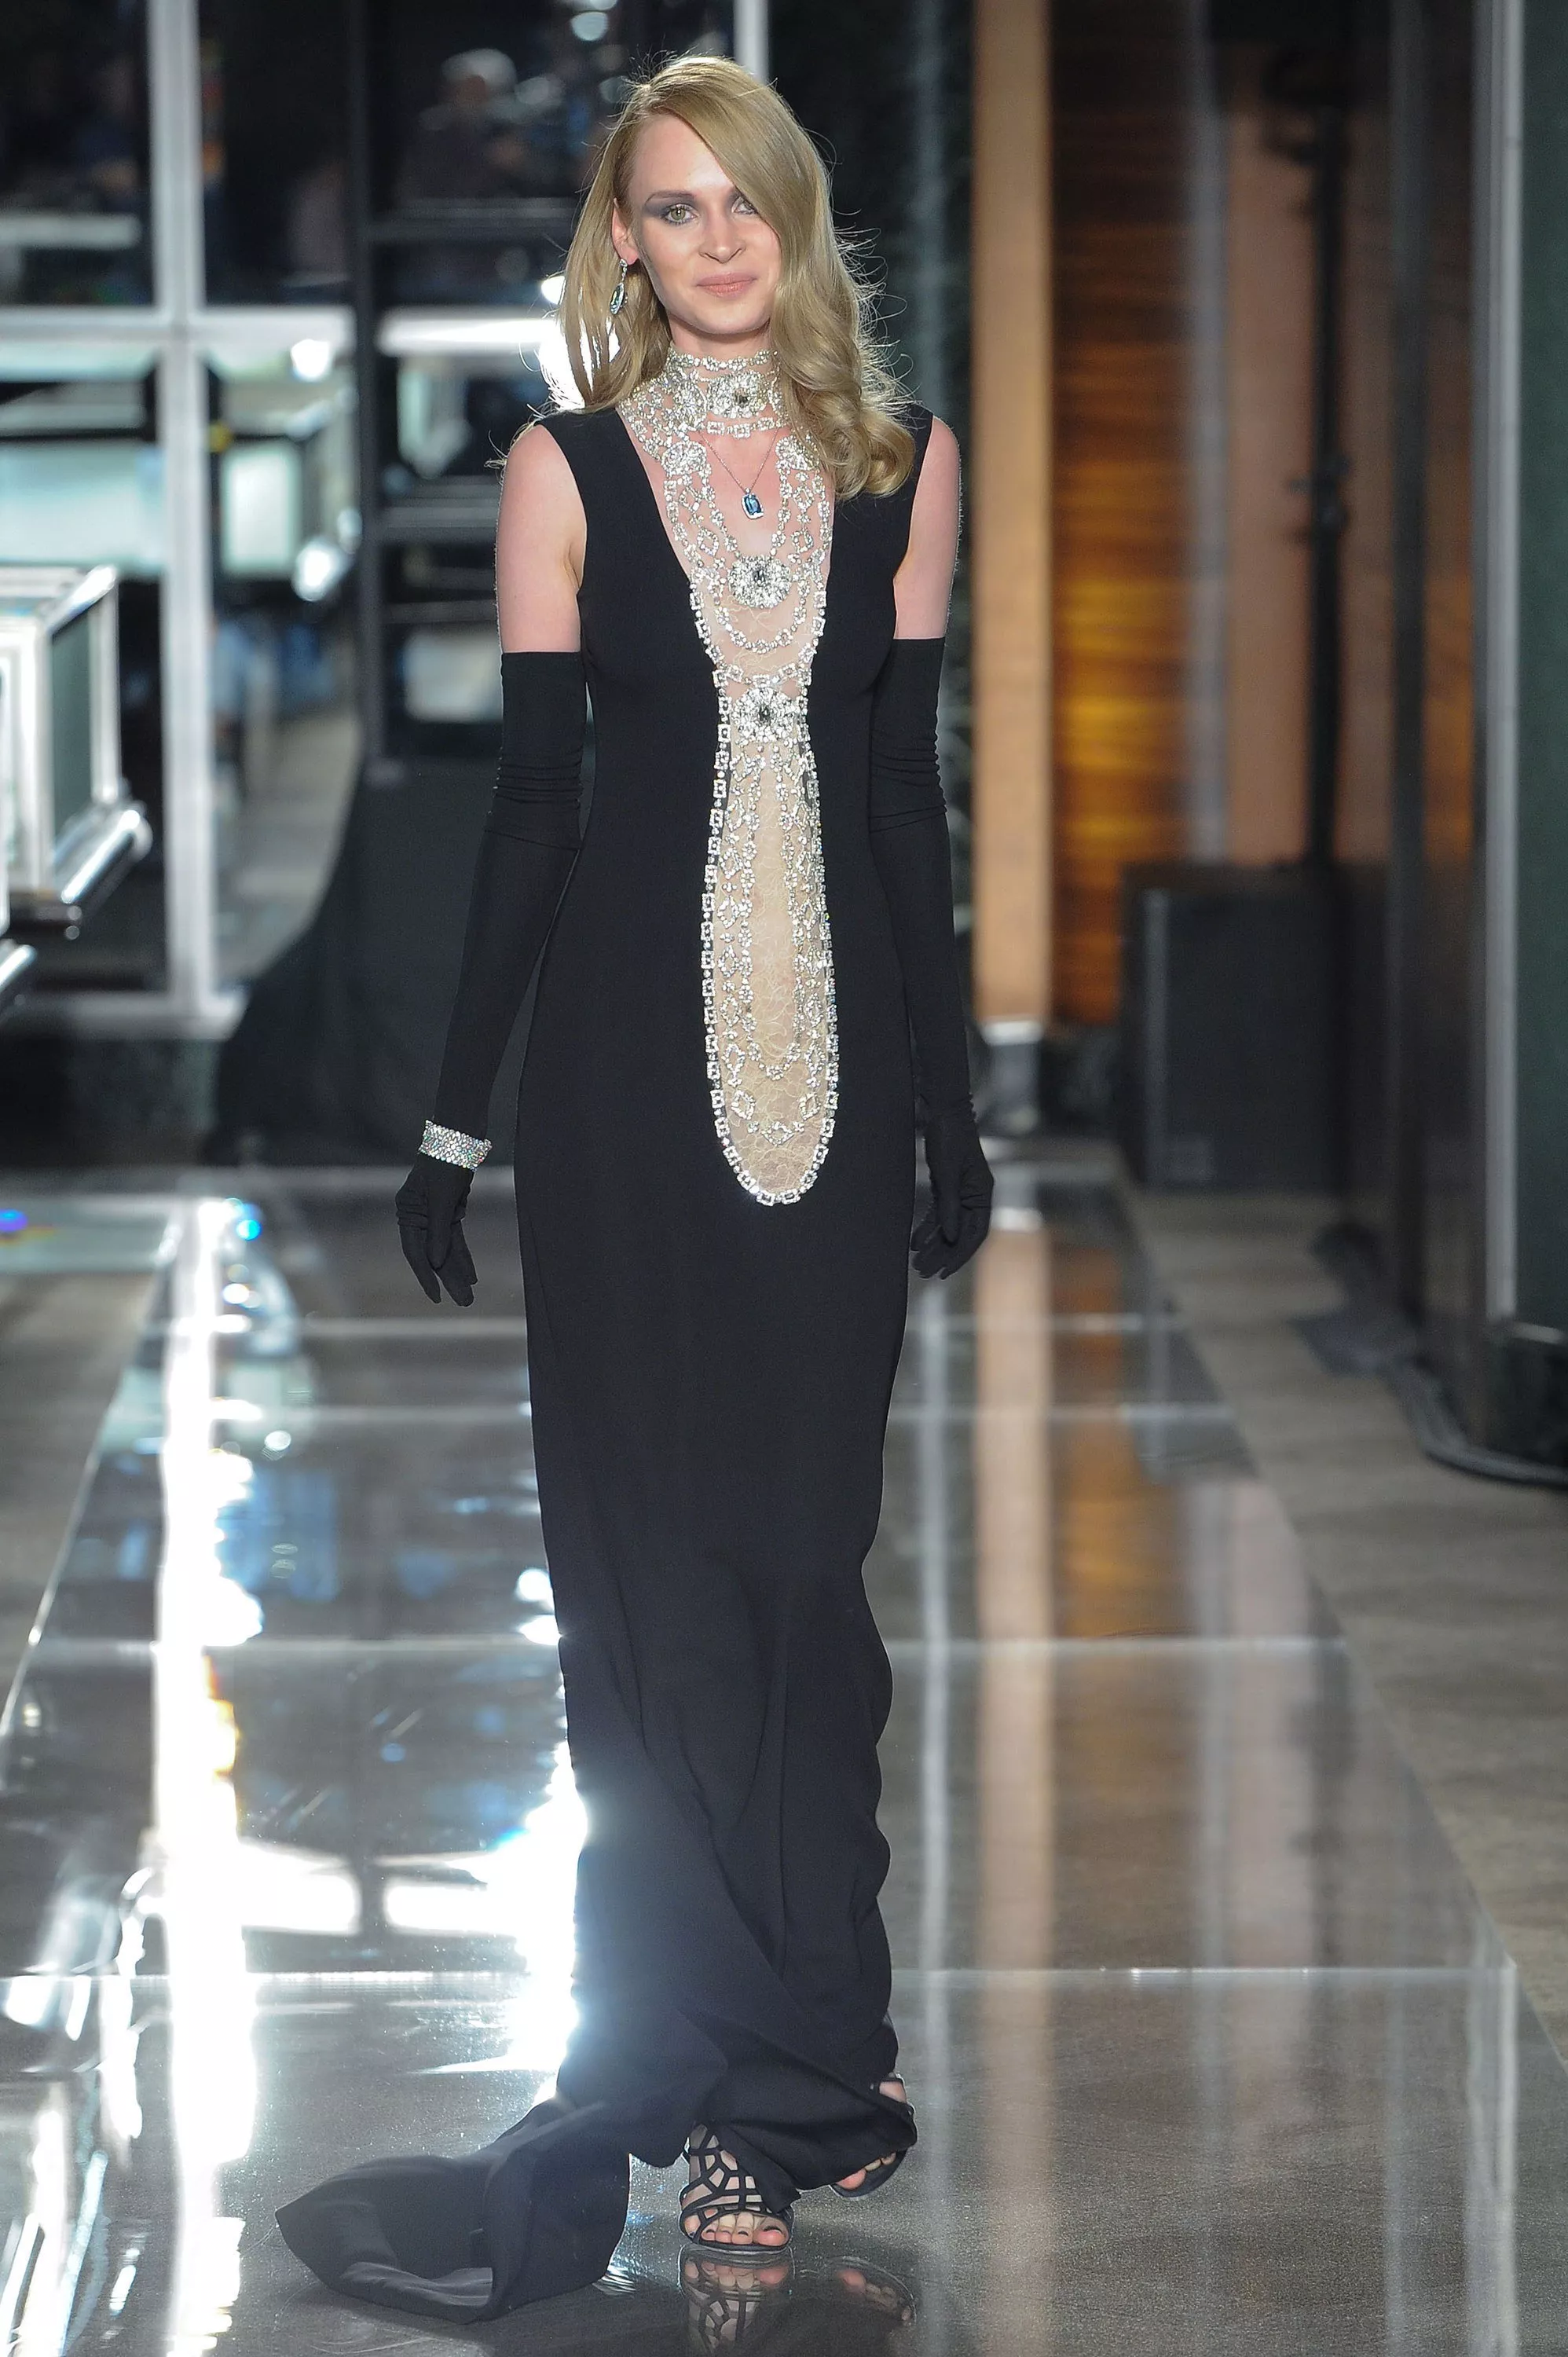 Reem Acra تفتح أسبوع الموضة للعرائس بمجموعة مستوحاة من أرشيف Tiffany & Co